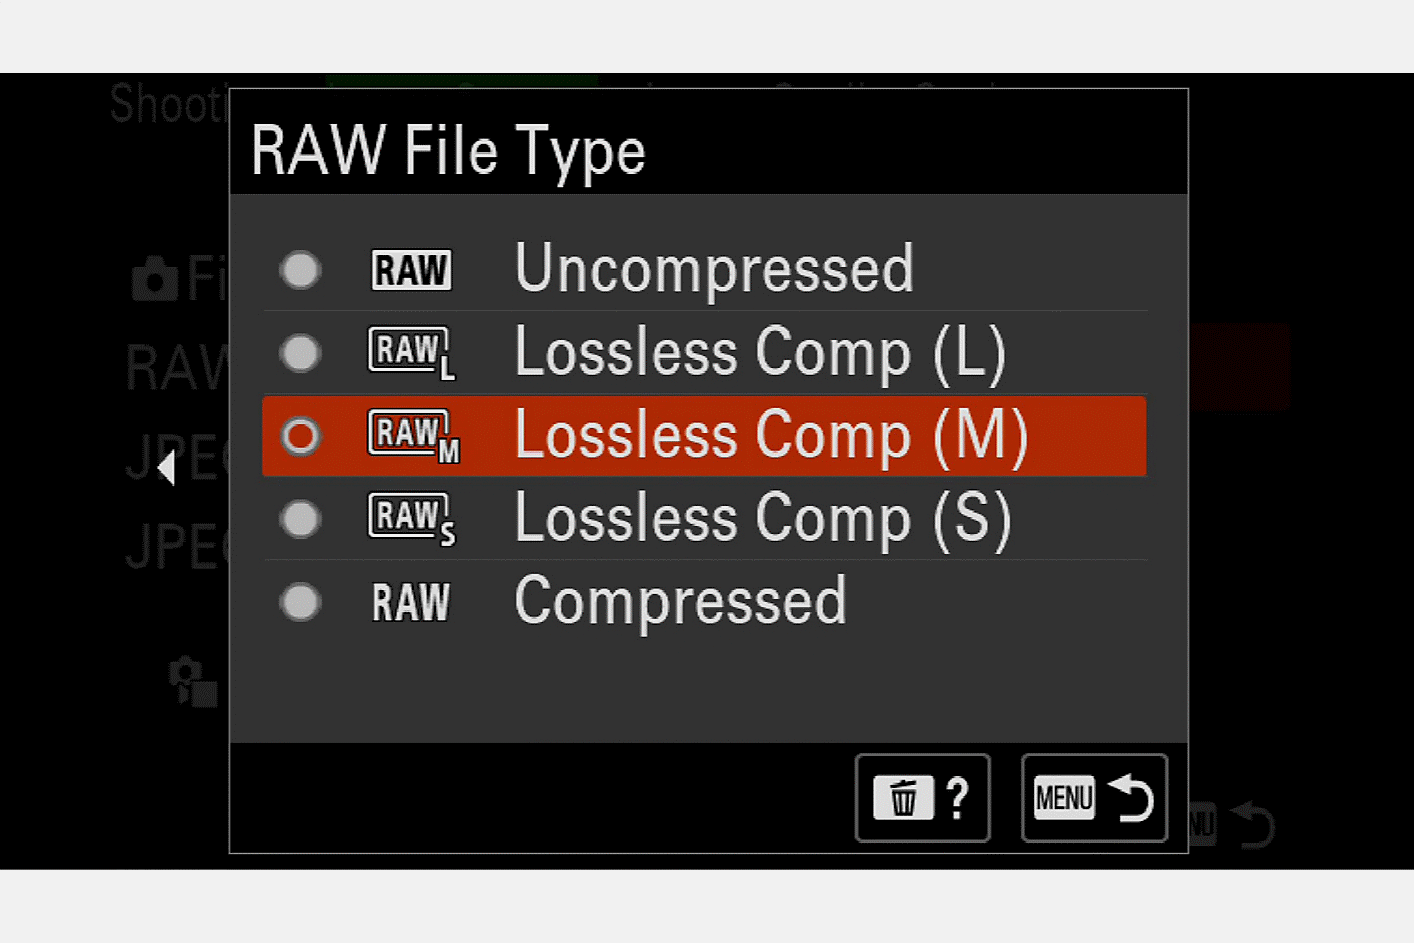 Image de l'affichage de l'appareil photo pour la sélection du type de fichier RAW